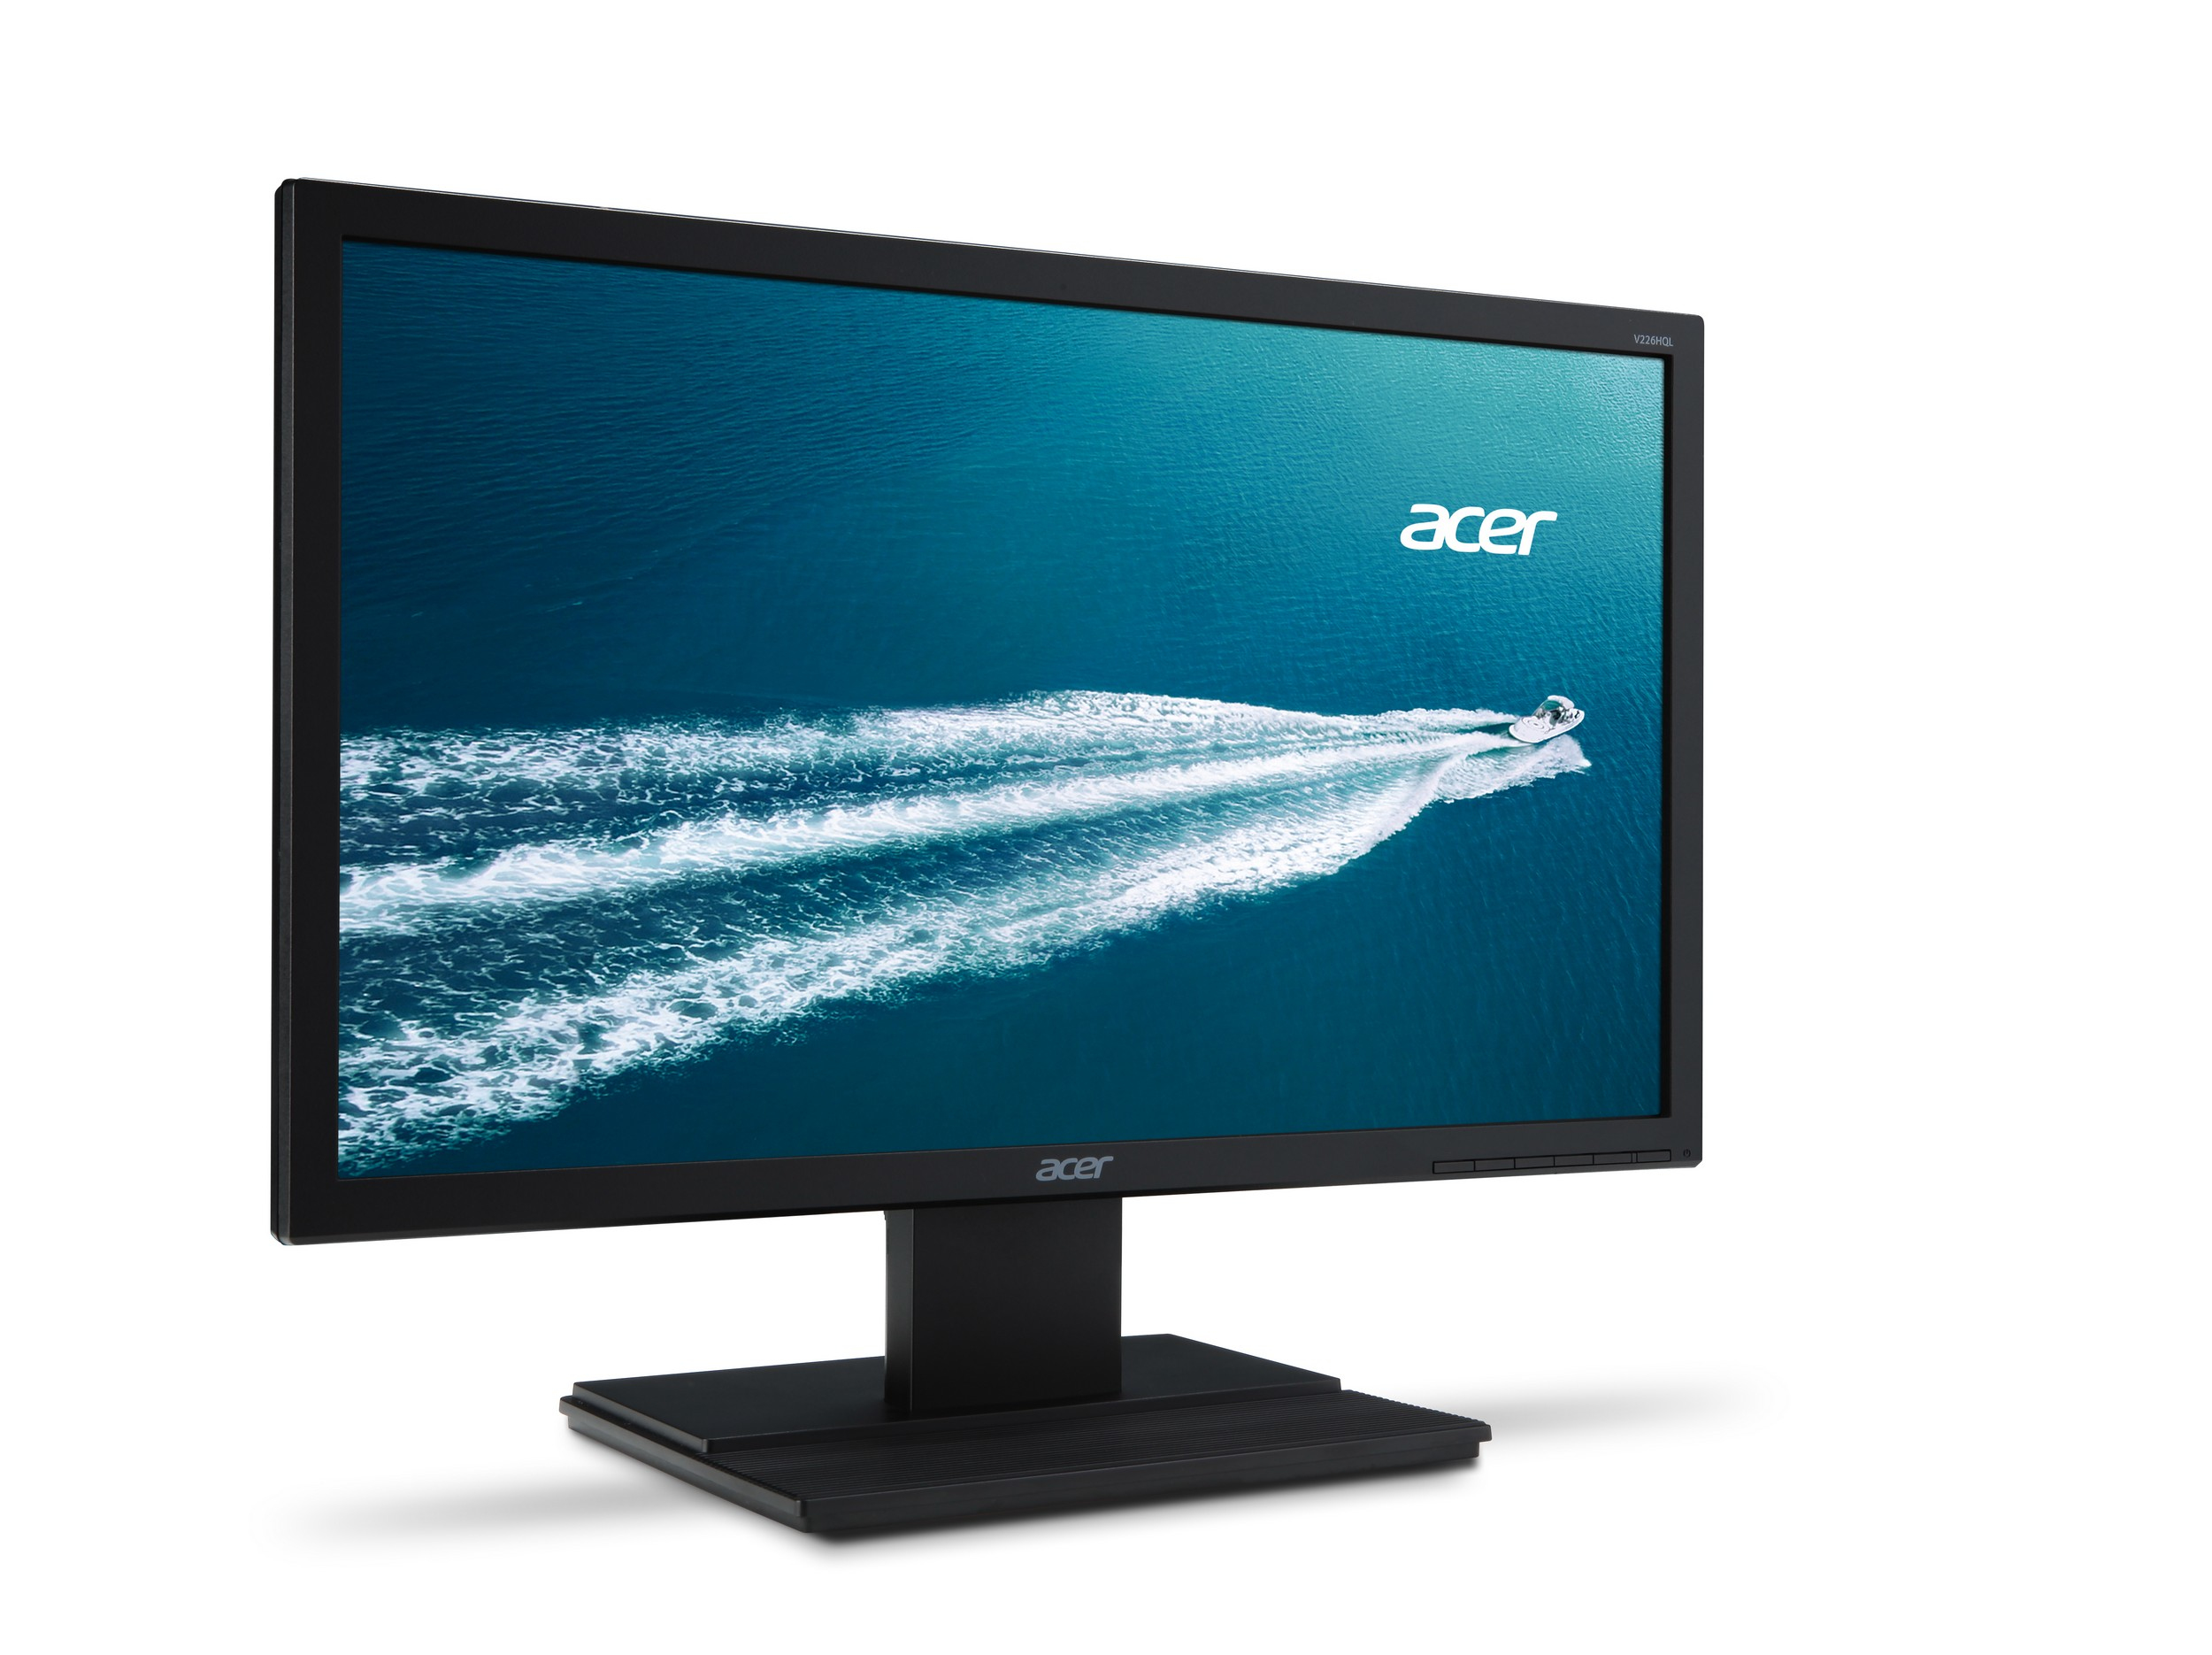 Monitor Acer V6 V226HQLBID 54,6 cm (21.5